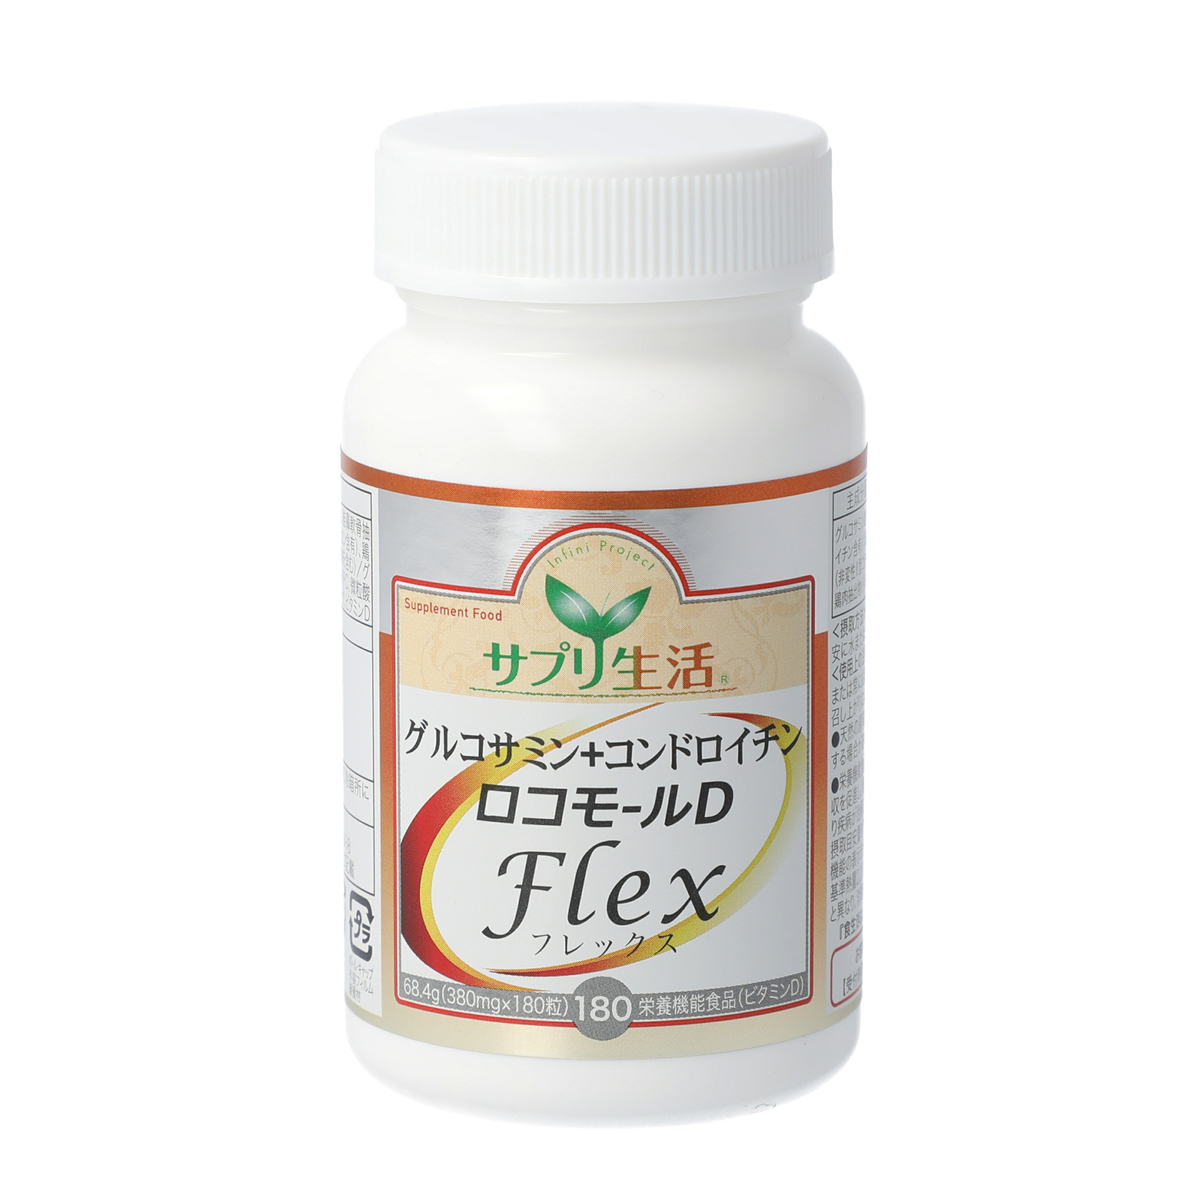 グルコサミン+コンドロイチン ロコモール D Flex 3個セット - QVC.jp